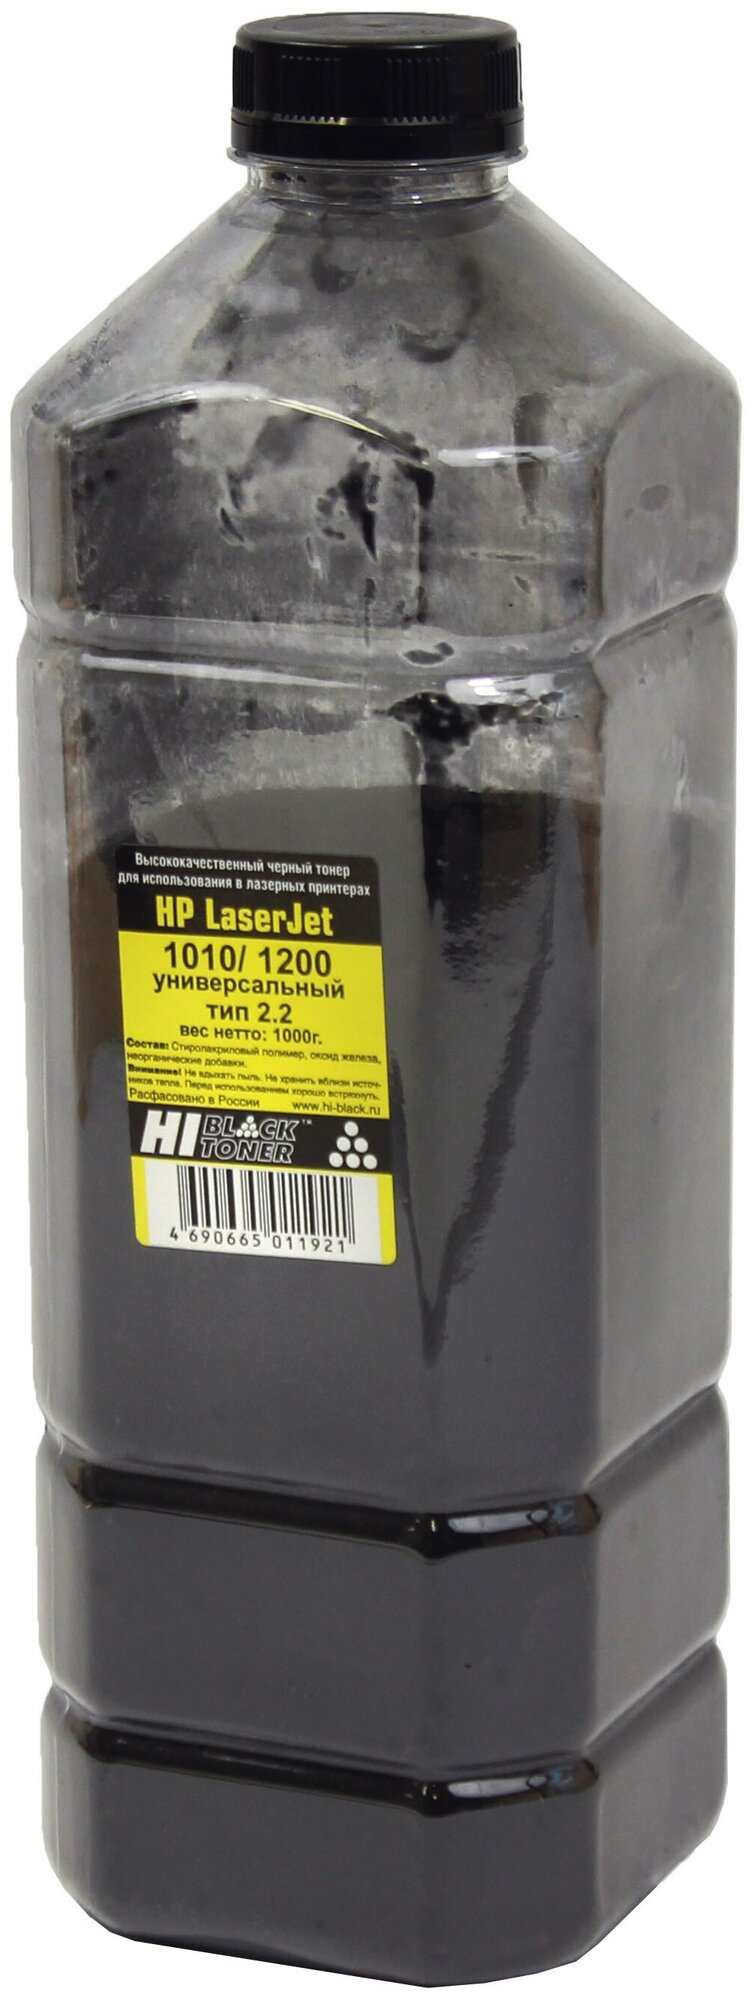 Тонер Hi-Black Универсальный для HP LJ 1010/ 1200, Тип 2.2, черный, 1 кг, для HP LJ 1010/1200, черный, 1000 г, 1 цвет